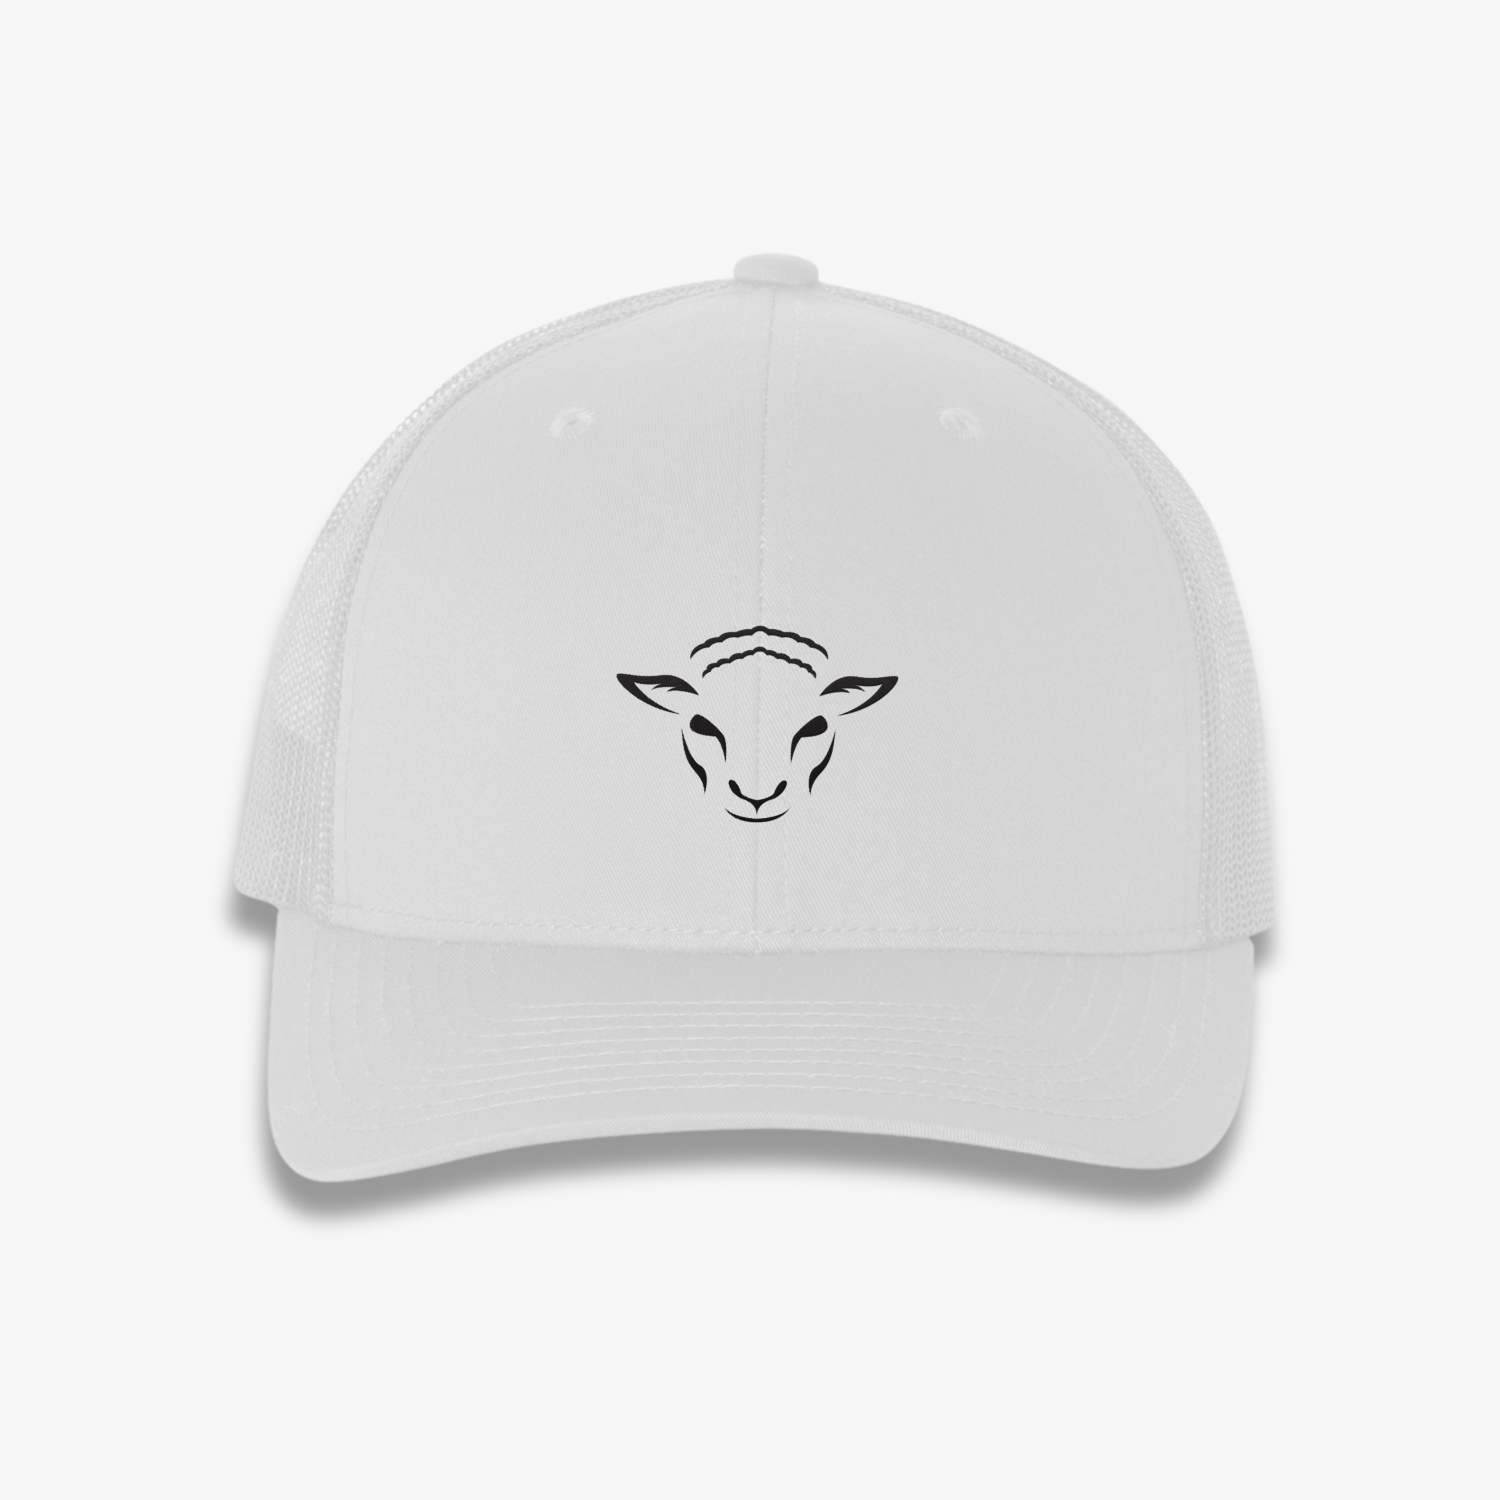 Risen Lamb Trucker Hat